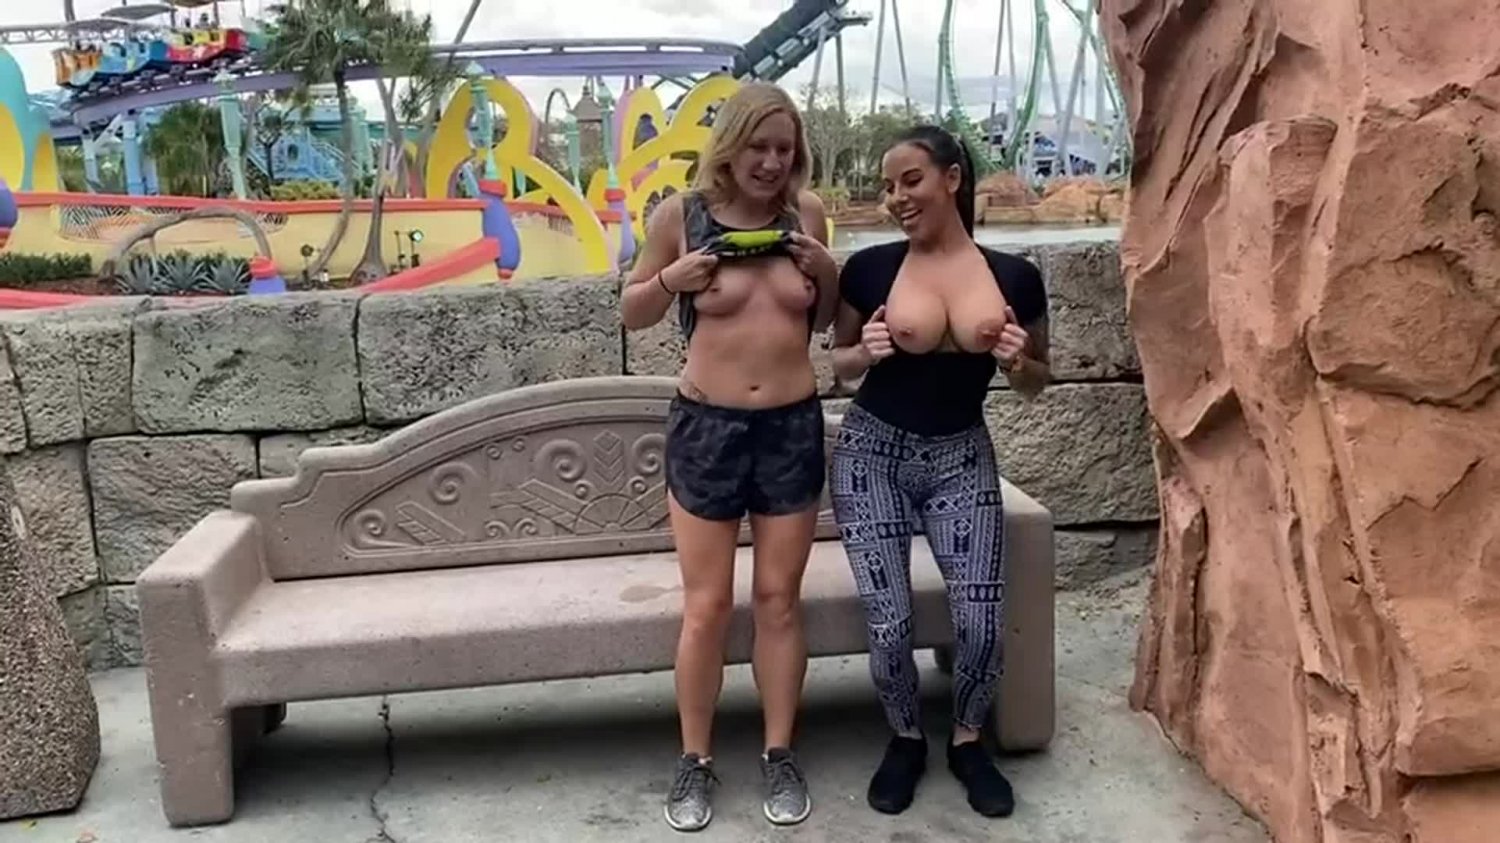 Amusement park porn